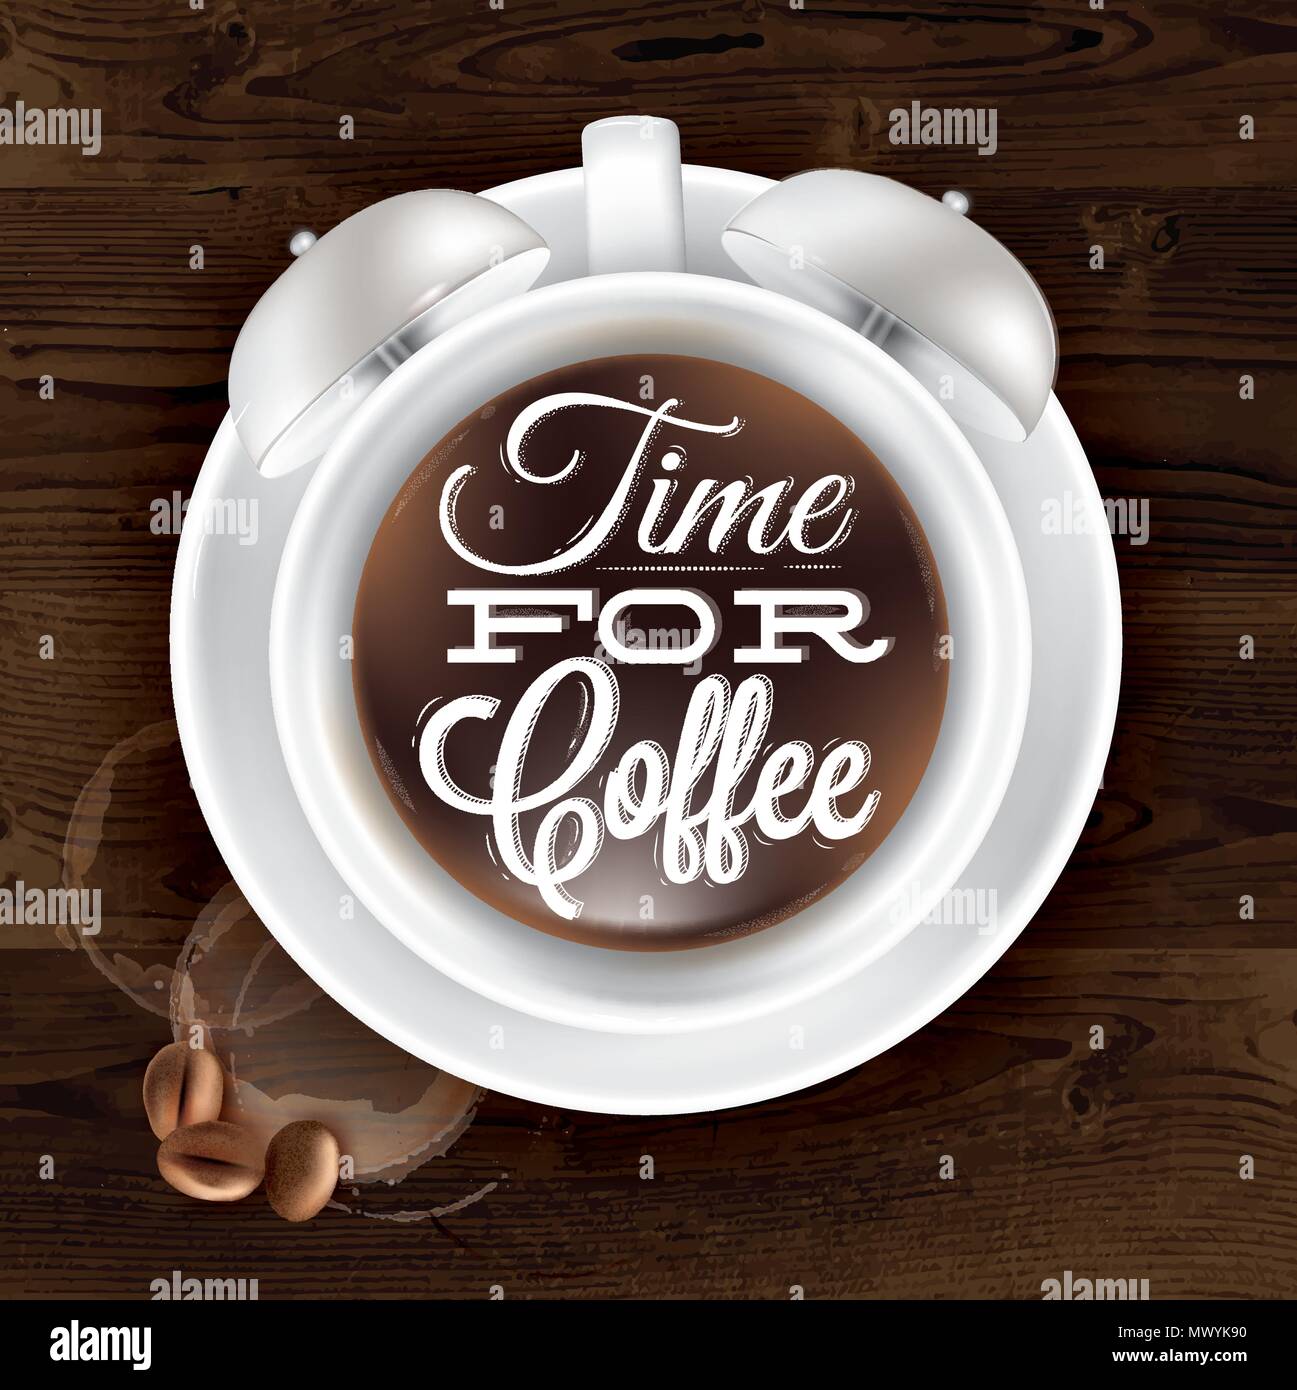 Coppa del poster kofem sveglia in legno scuro colore mostrato con una tazza di scritte tempo per caffè. Vettore Illustrazione Vettoriale